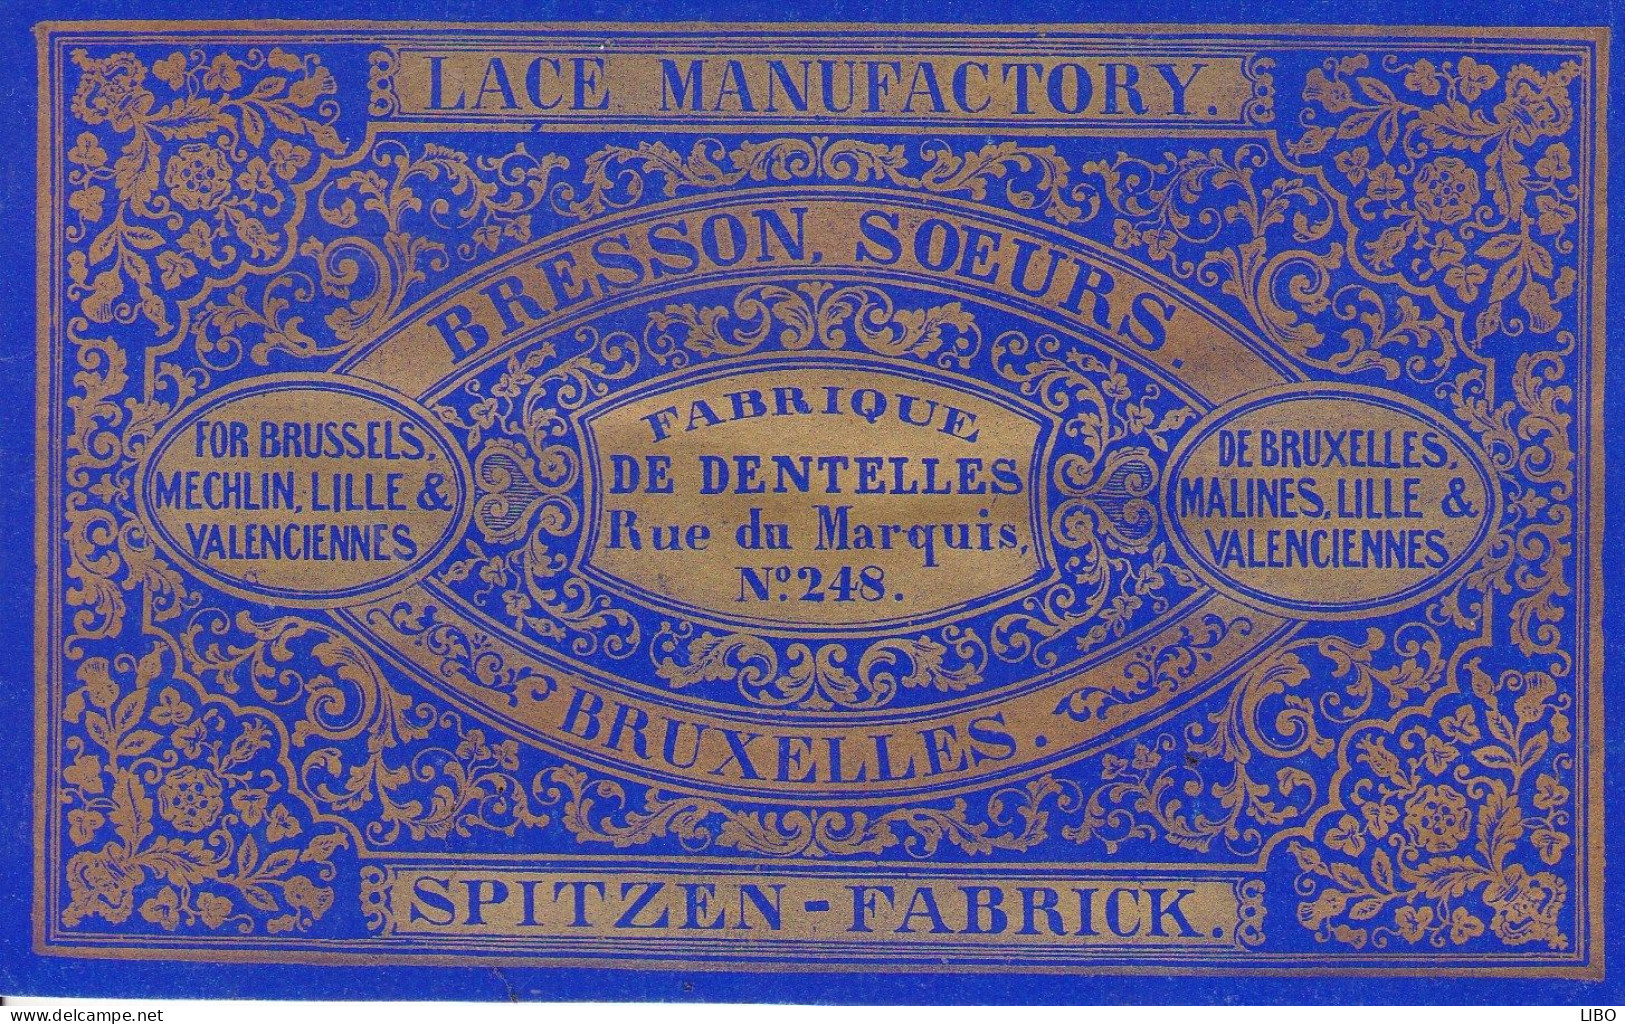 Fabrique De Dentelles SPITZEN-FABRICK BRESSON Soeurs Bruxelles Rue Du Marquis BRUXELLES LILLE VALENCIENNES C. 1860 - Cartes De Visite